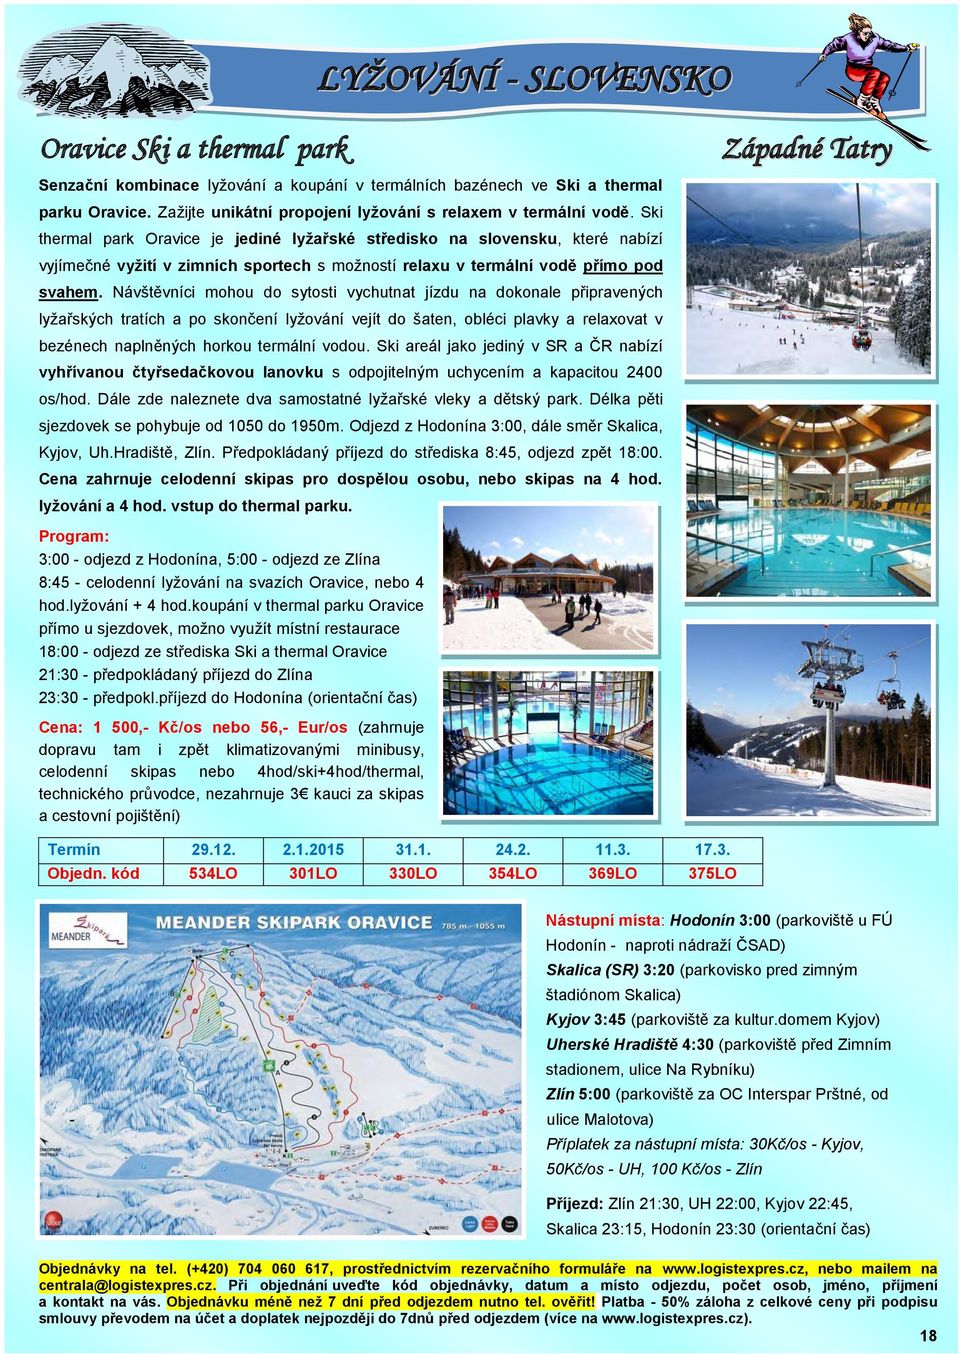 Ski thermal park Oravice je jediné lyžařské středisko na slovensku, které nabízí vyjímečné vyžití v zimních sportech s možností relaxu v termální vodě přímo pod svahem.